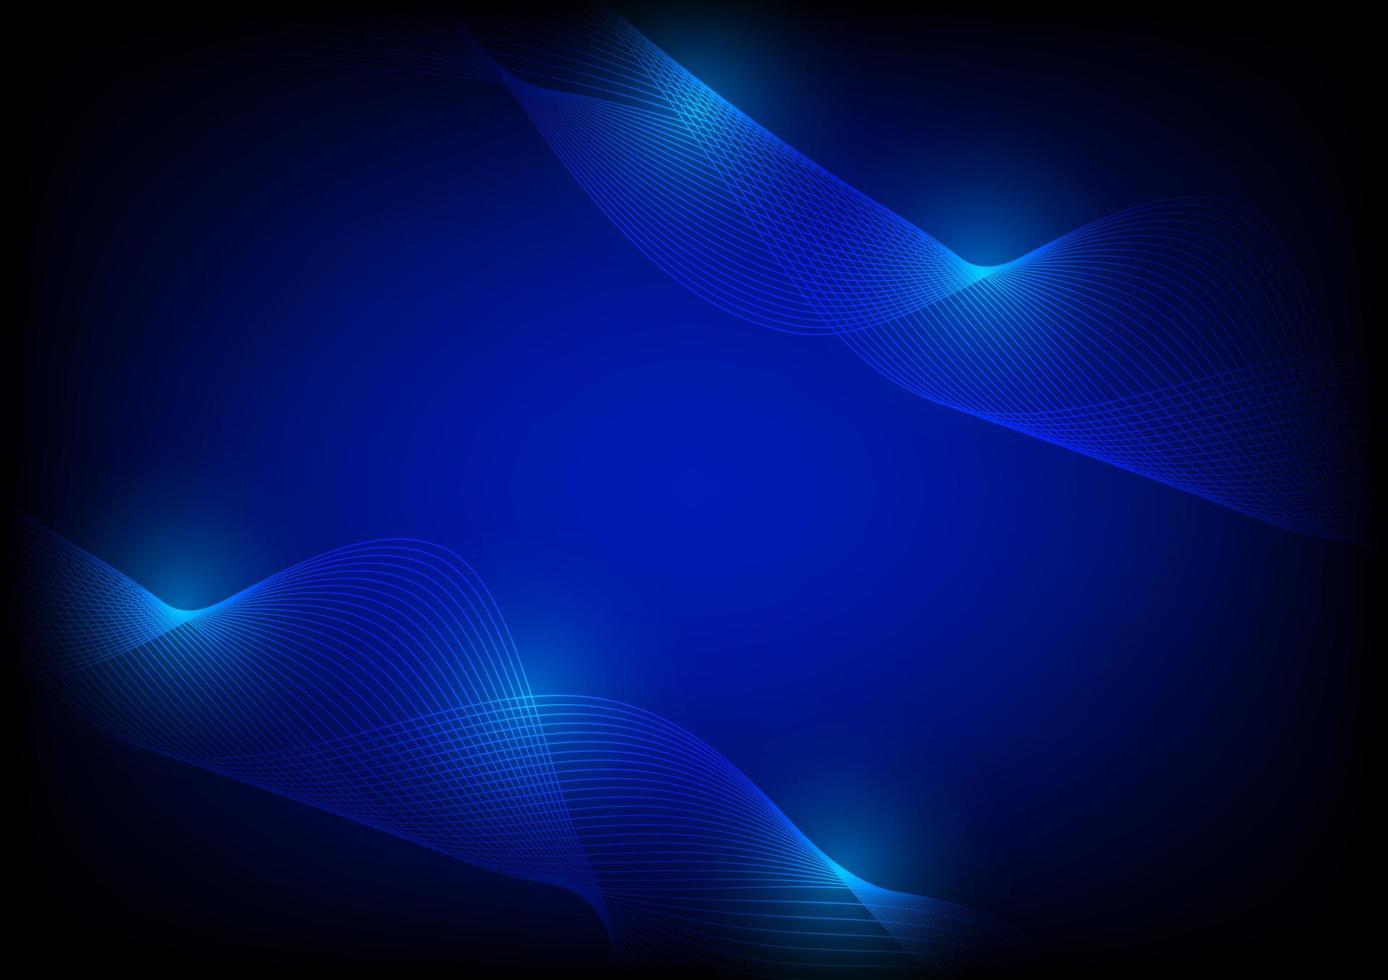 abstracte achtergrond blauwe golflijn glad voor achtergrondillustratievector vector